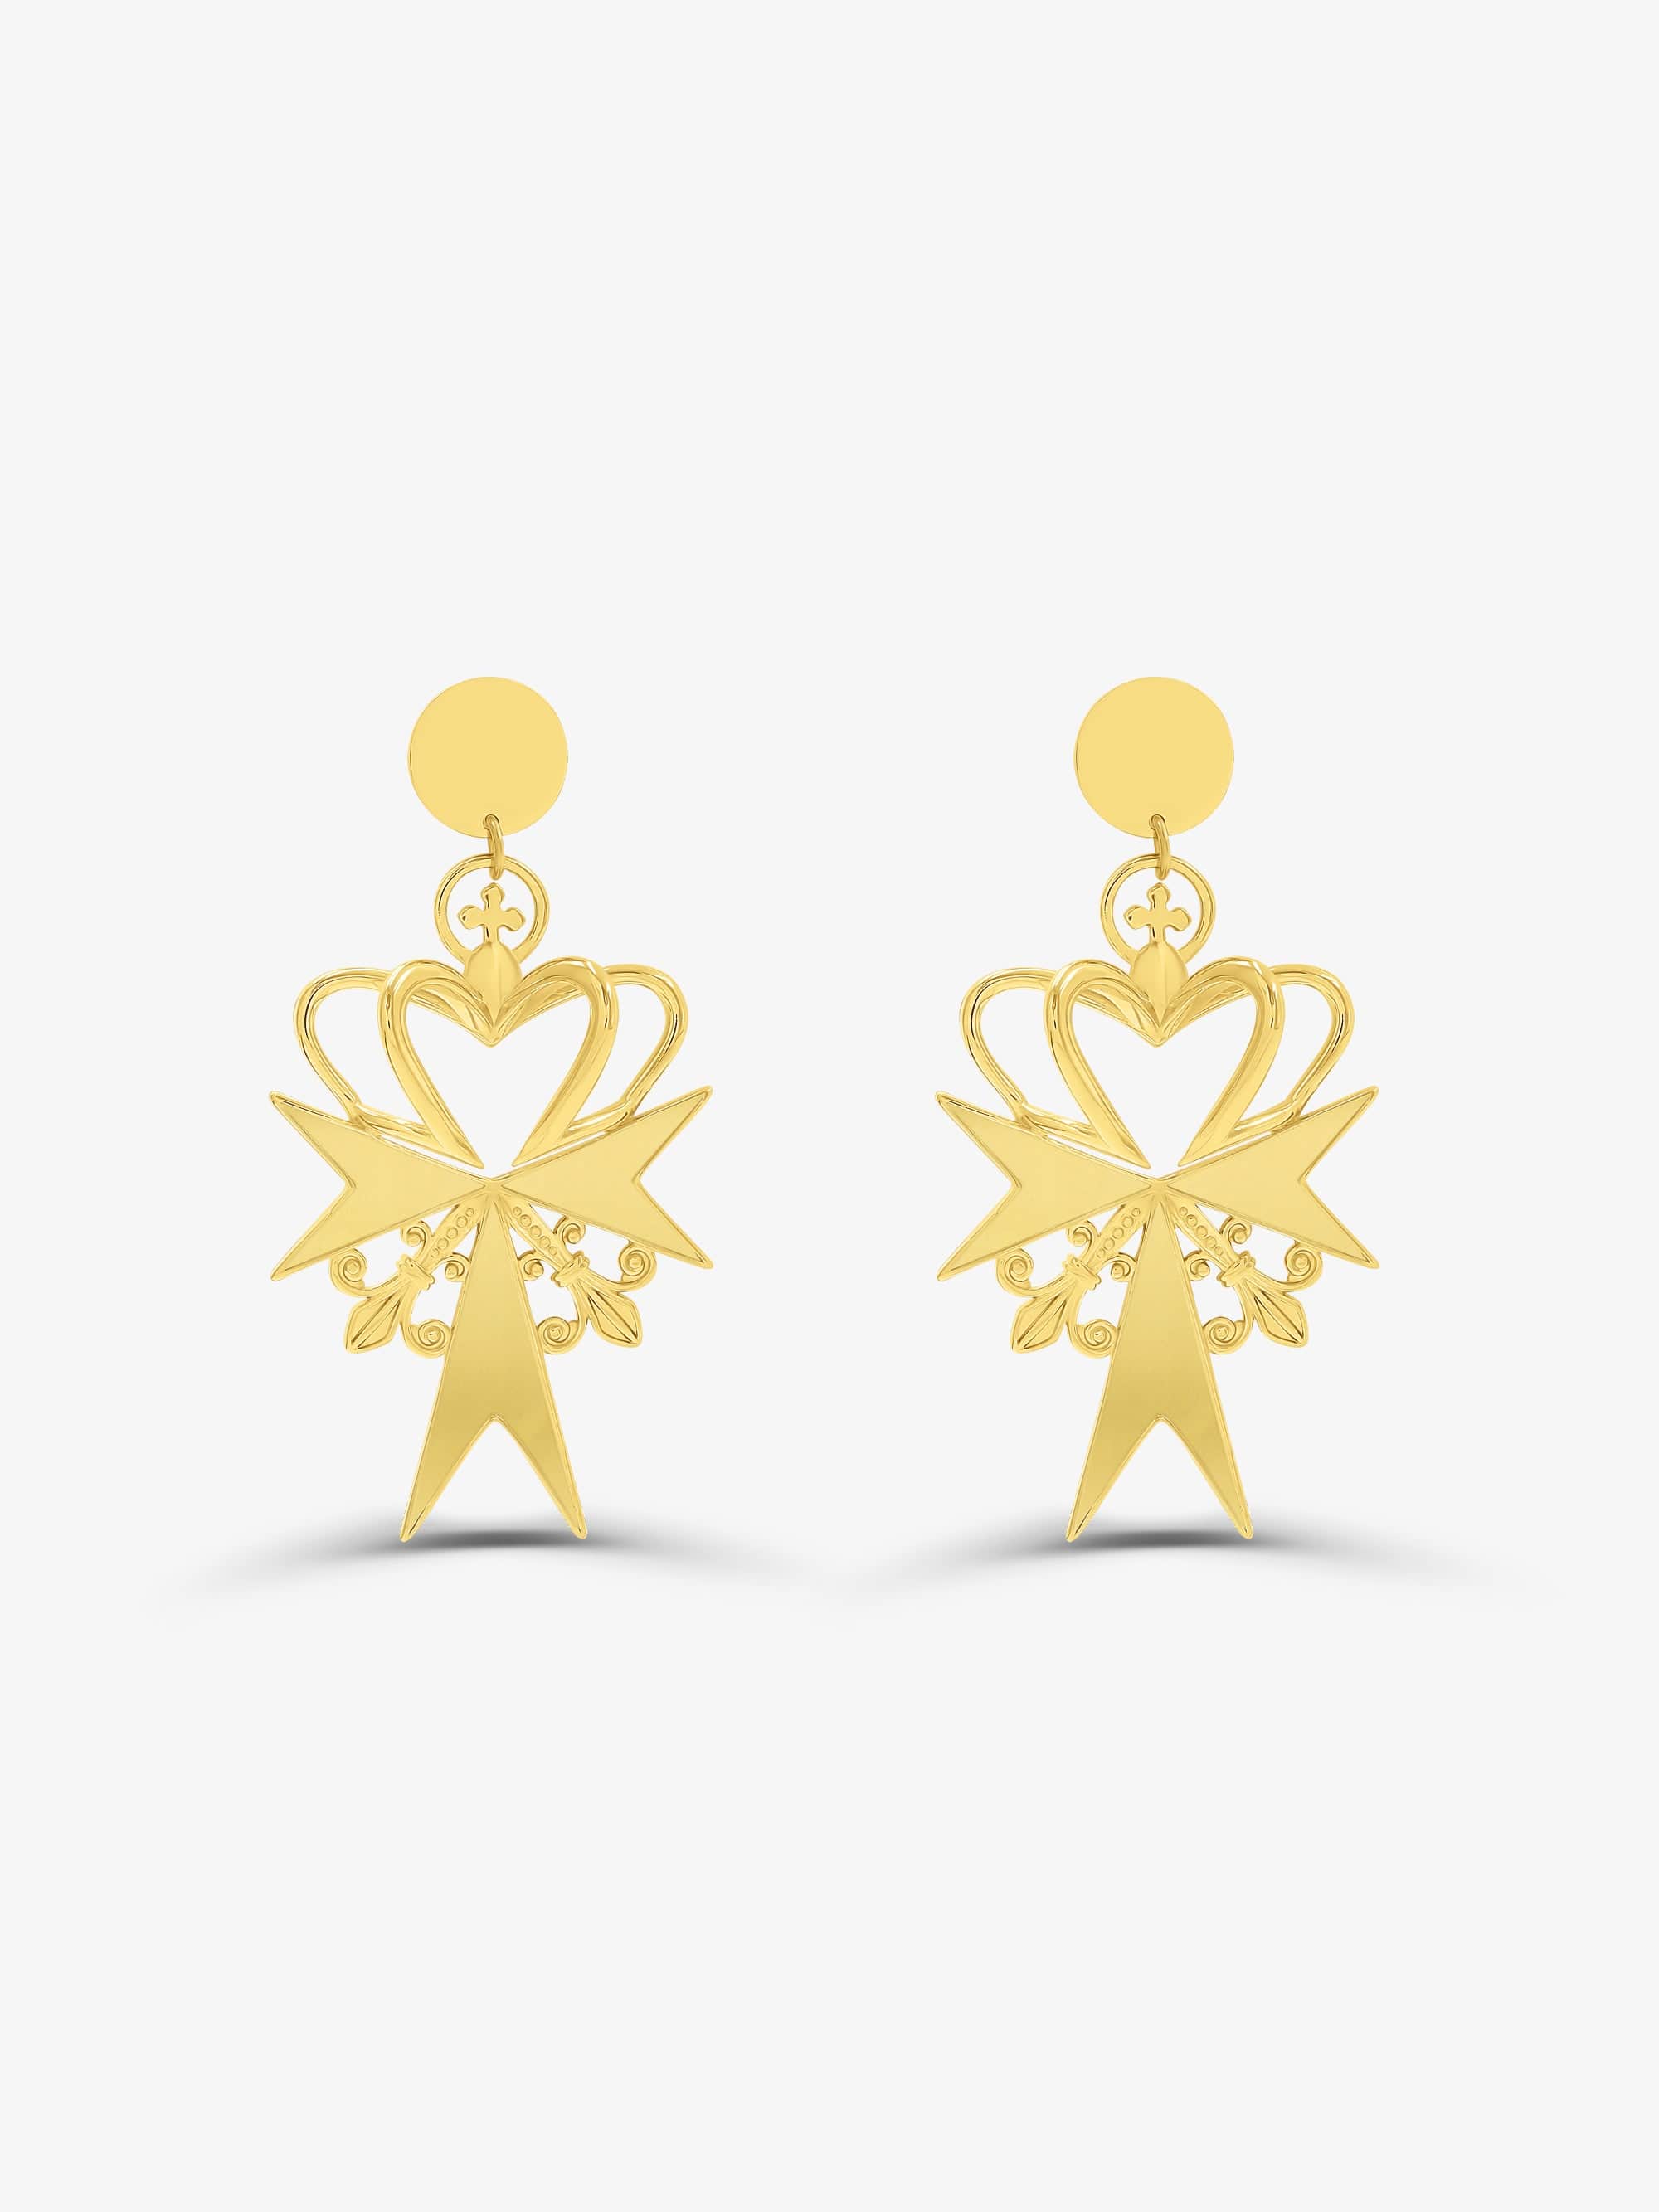 Sultana-Malta EARRINGS 3D Crown Gold Earrings